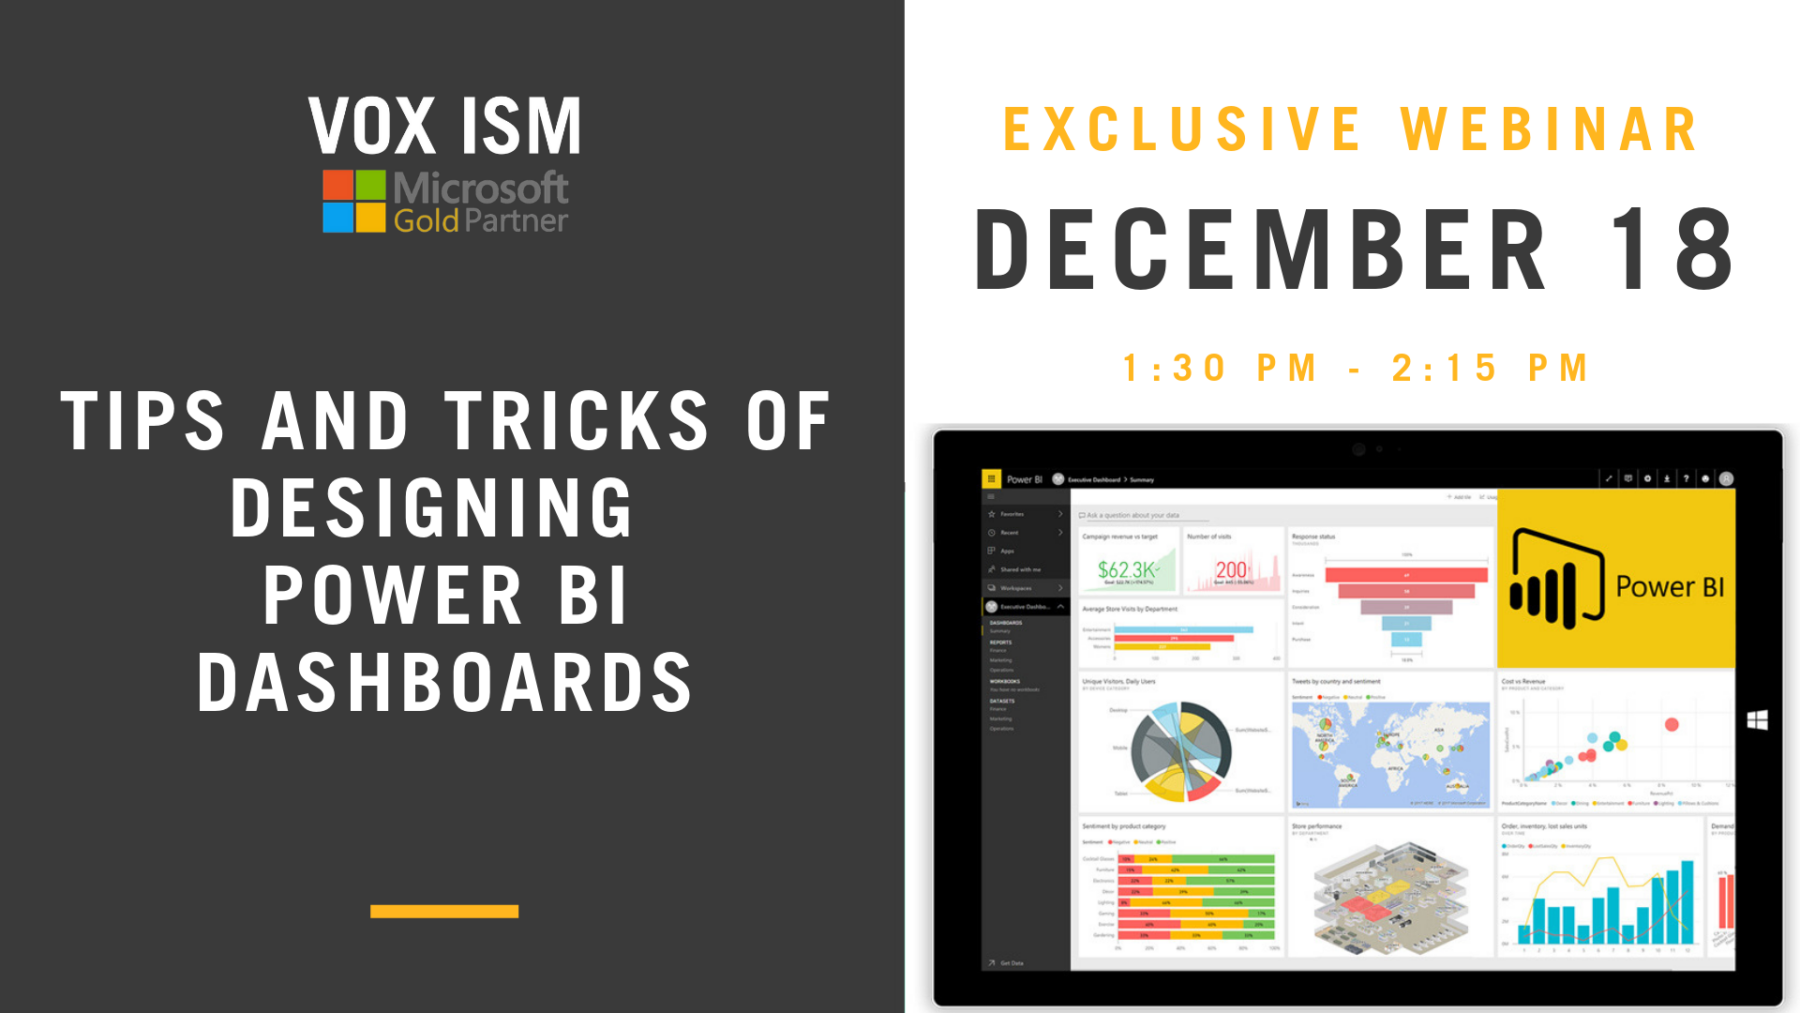 Tips and Tricks of Designing Power BI Dashboards - December 18 - Webinar - VOX ISM